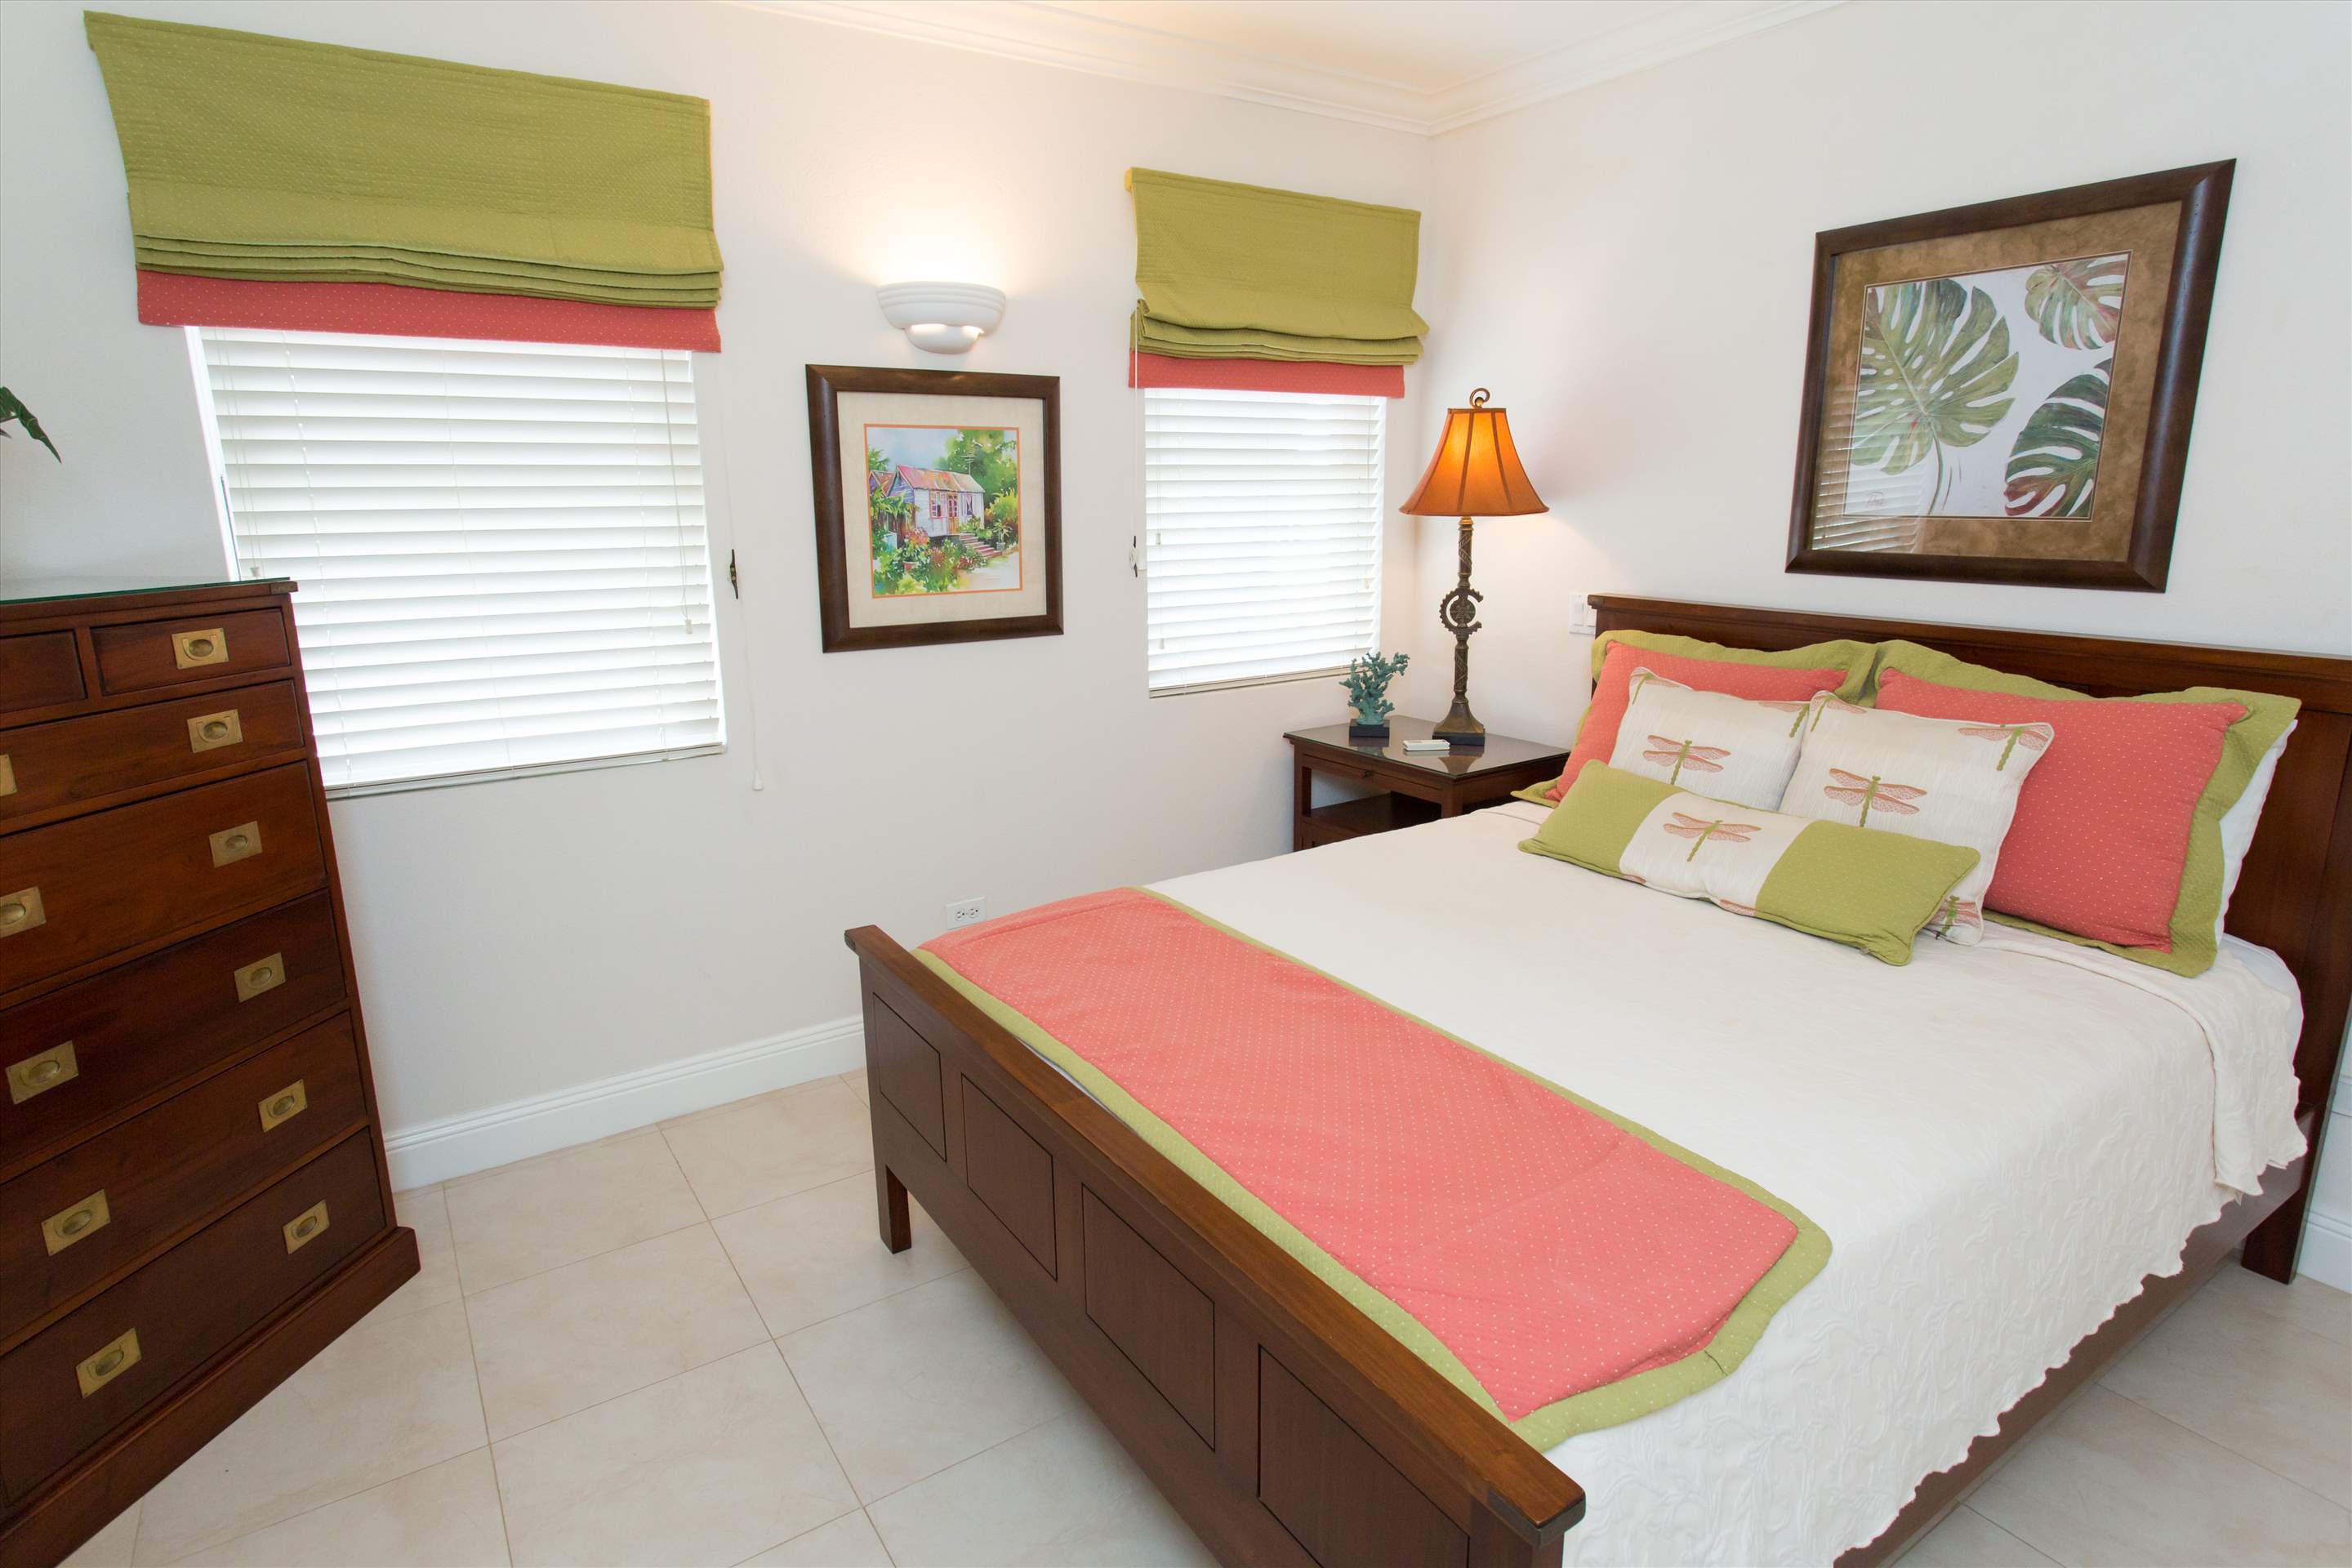 Sandy Hook 21, 3 bedroom, 3 bedroom villa in St. Lawrence Gap & South Coast, Barbados Photo #13